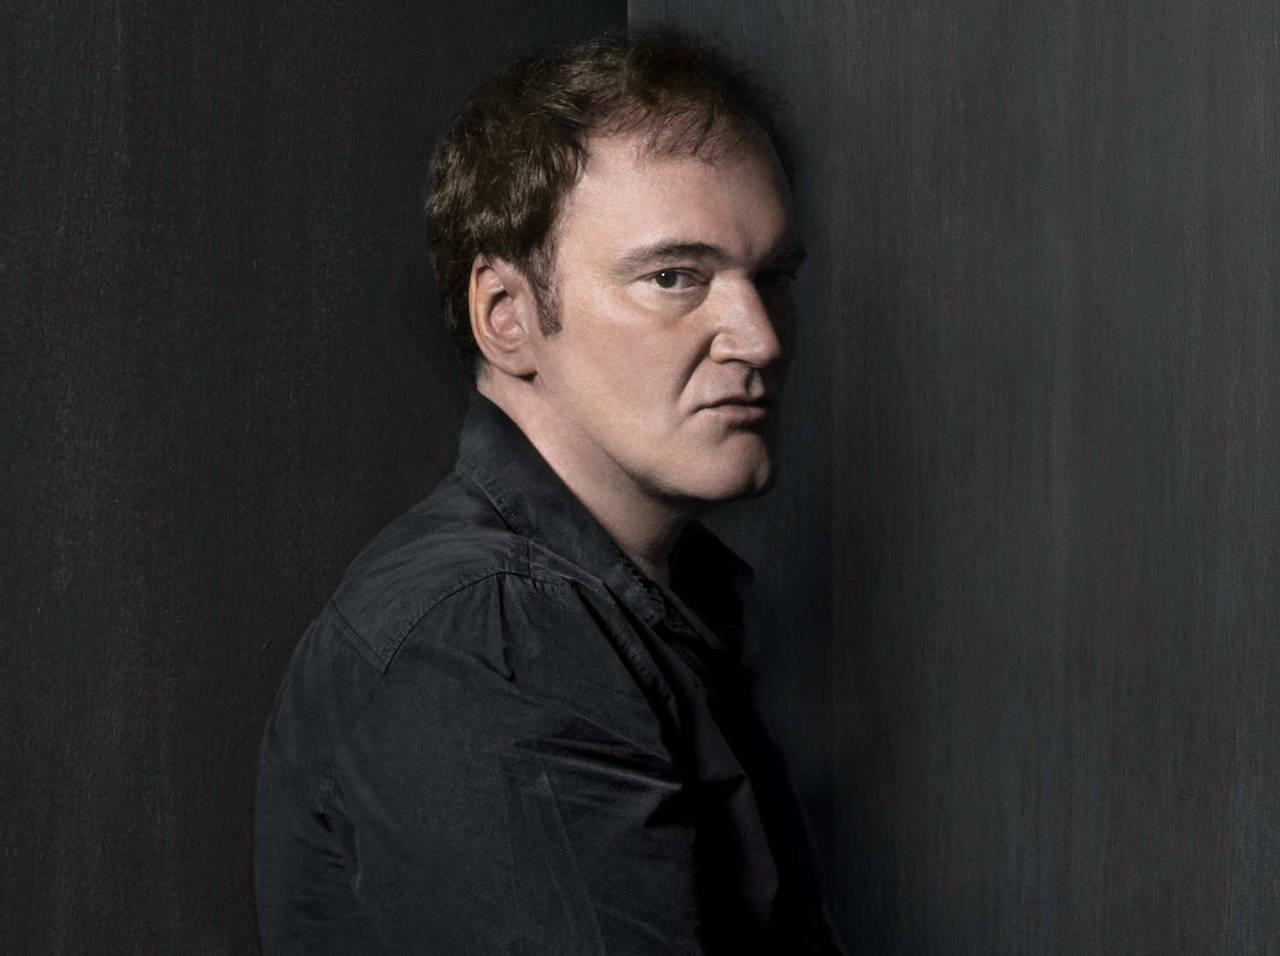 Historia. El cineasta Quentin Tarantino declaró que alista un filme sobre los crímenes de Charles Manson, quien murió hace días.